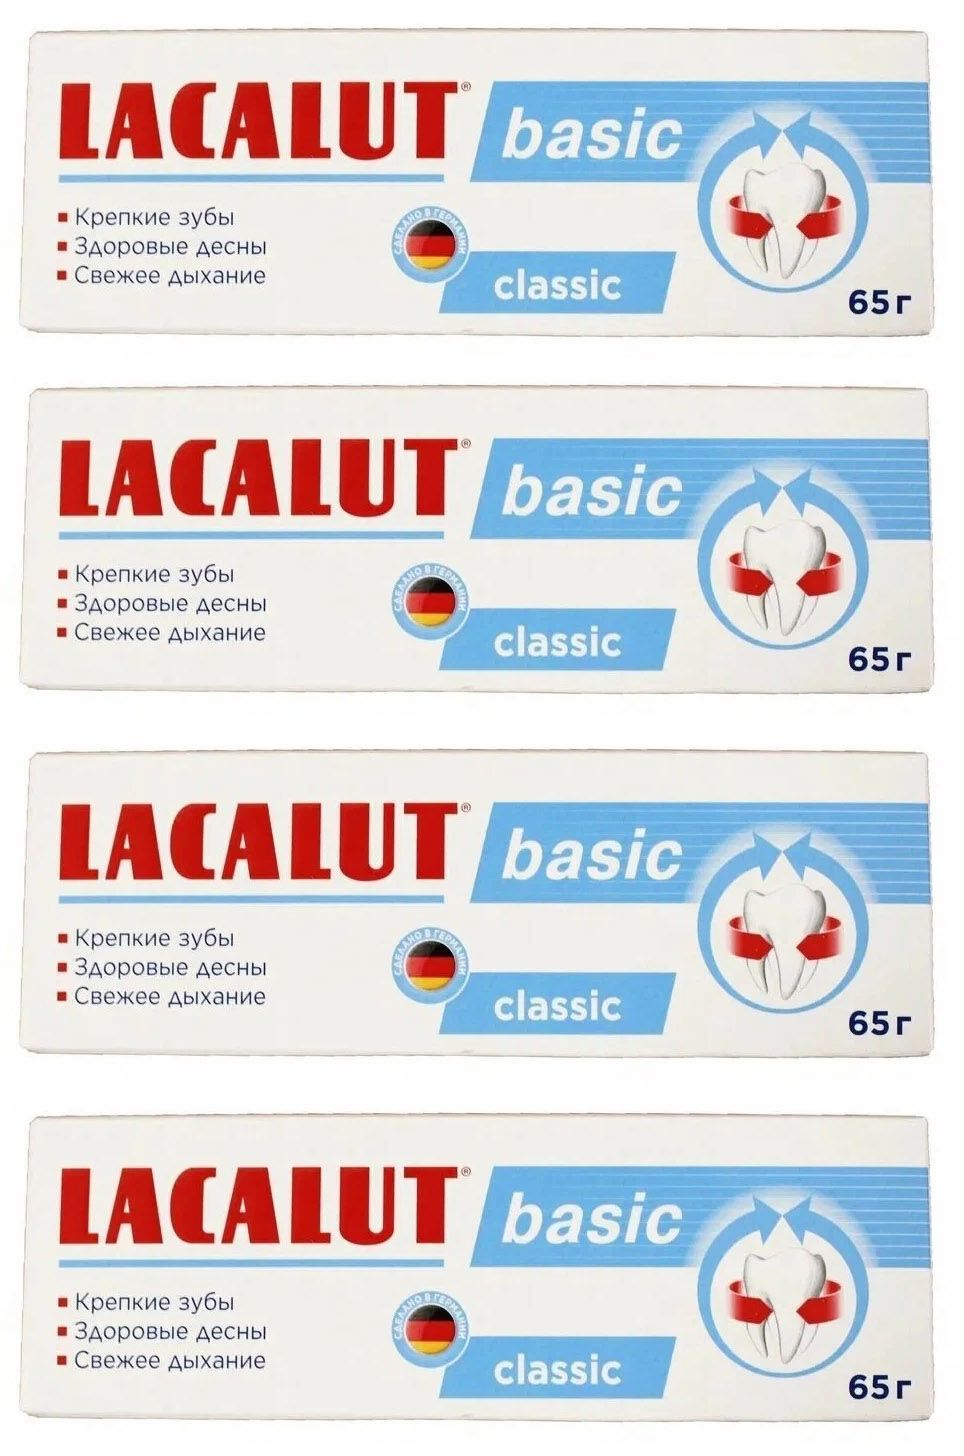 Зубная паста Lacalut basic 65 г спайка 4 шт зубная паста lacalut basic черная смородина имбирь 75 мл